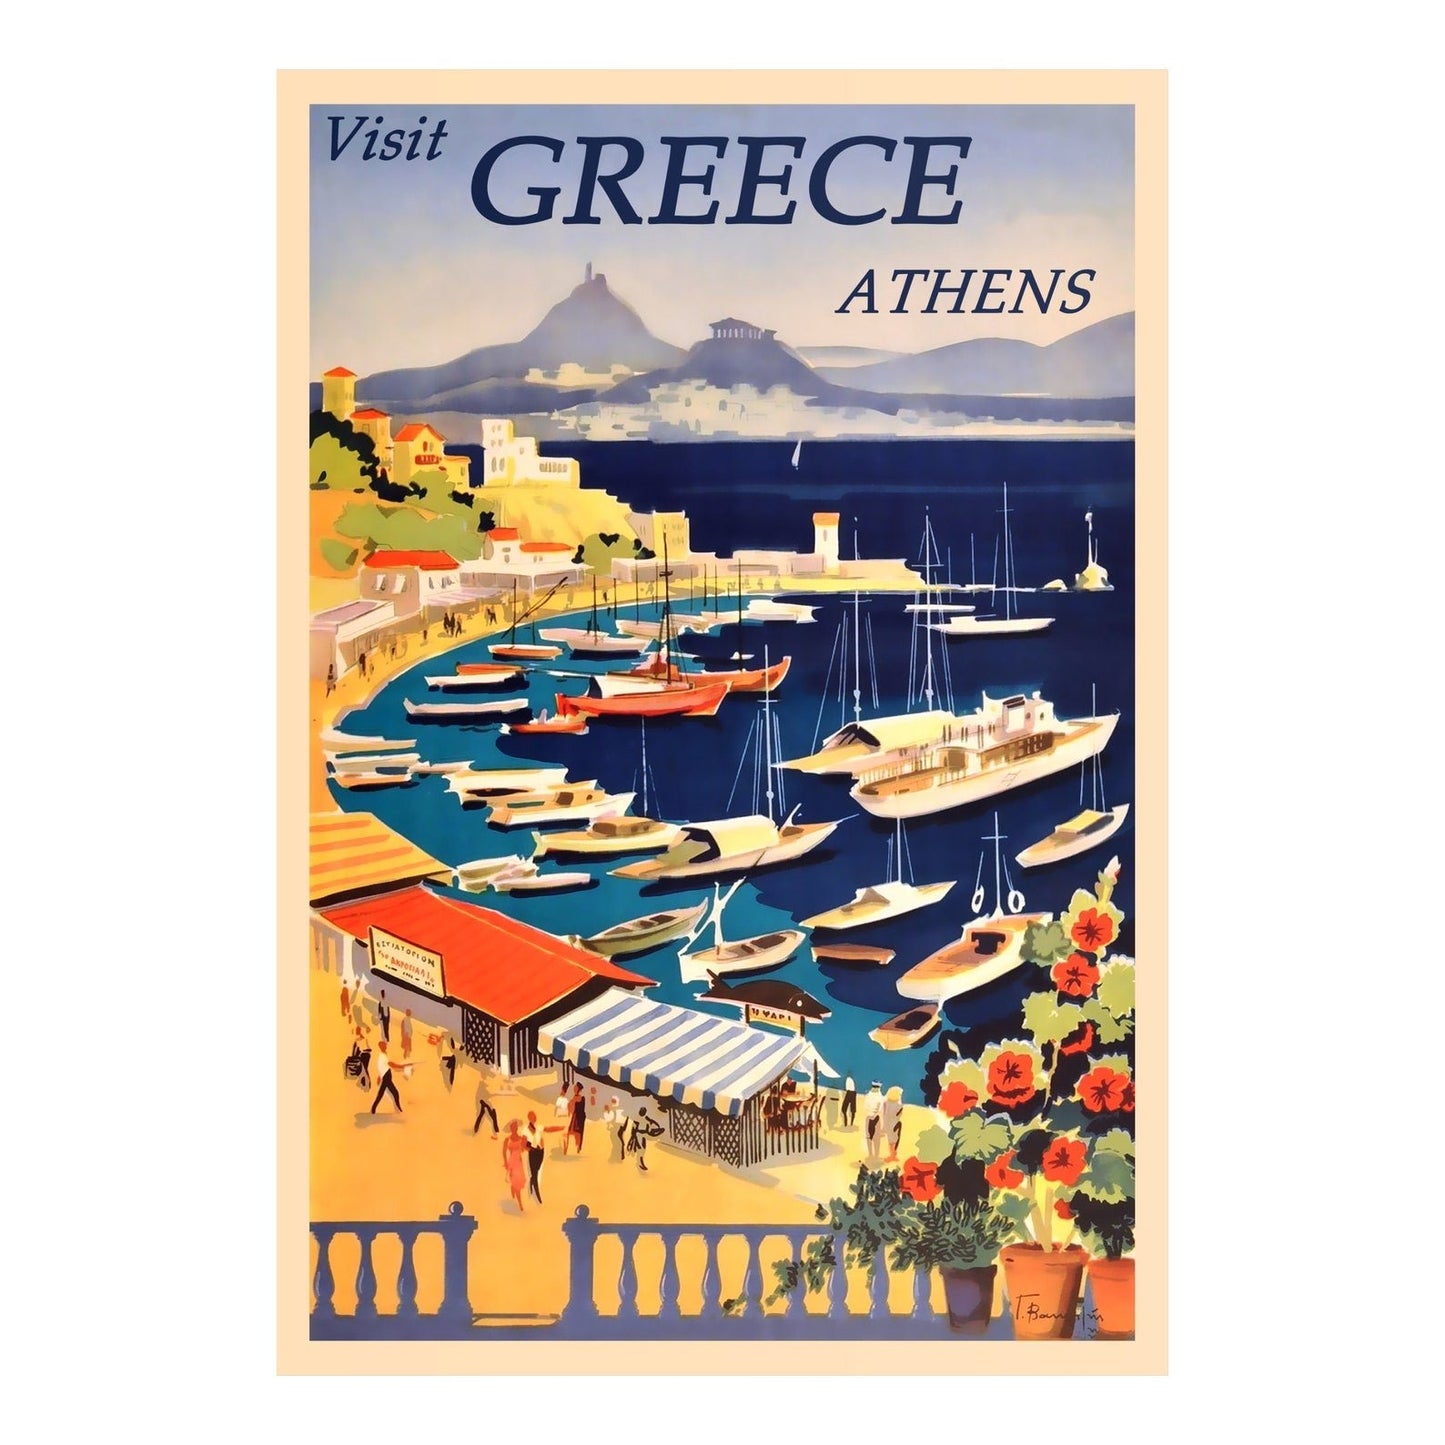 Visitez Athènes - Affiche vintage de voyage en Grèce